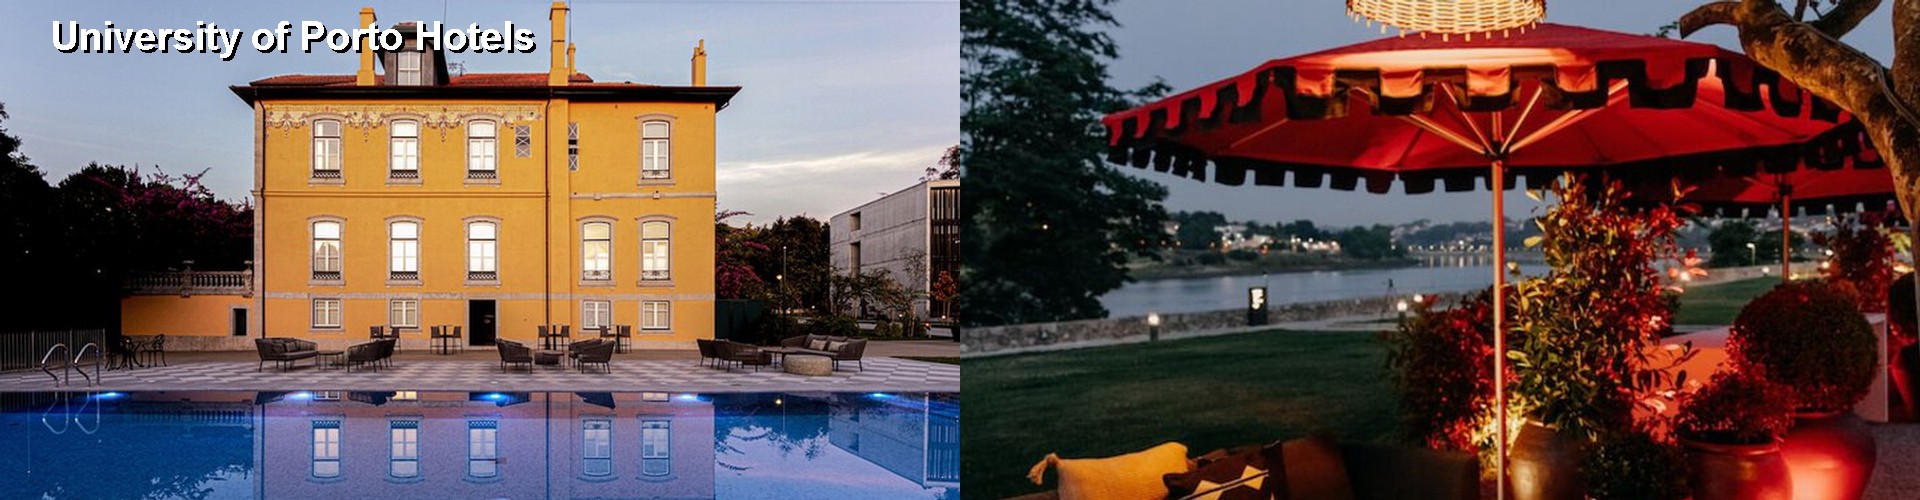 5 Best Hotels near University of Porto